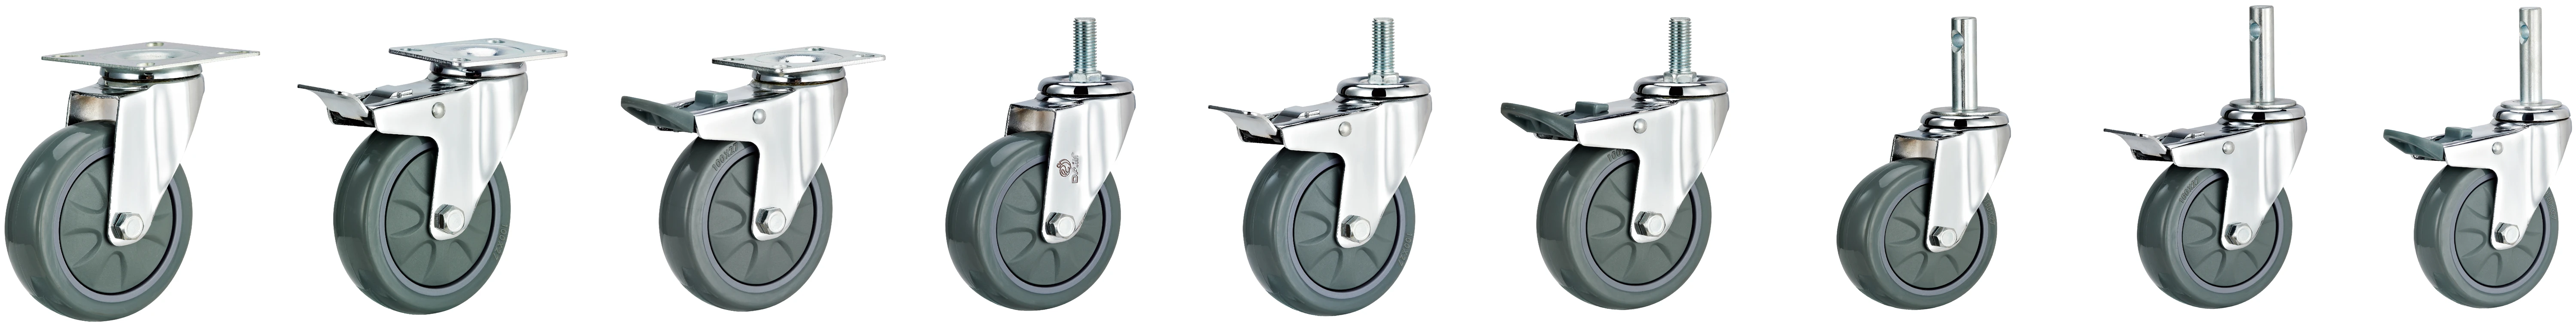 Dajin caster light duty small swivel caster wheels threaded for trolleys-2